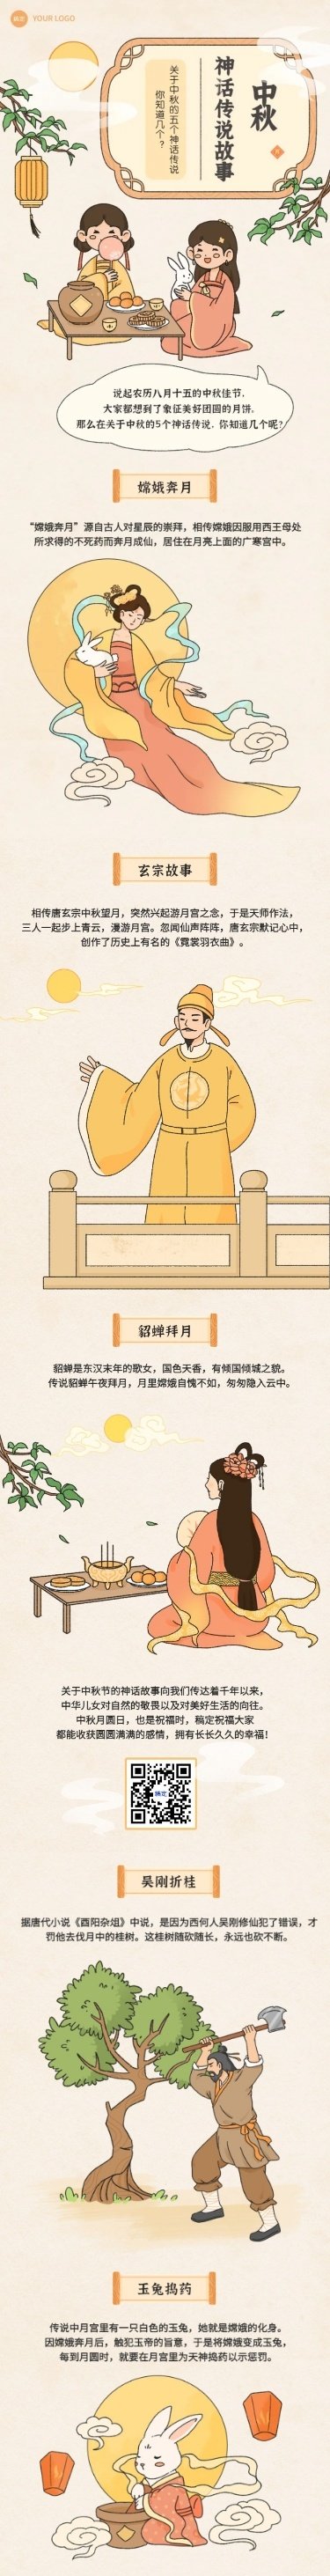 中秋节节日祝福手绘插画条漫